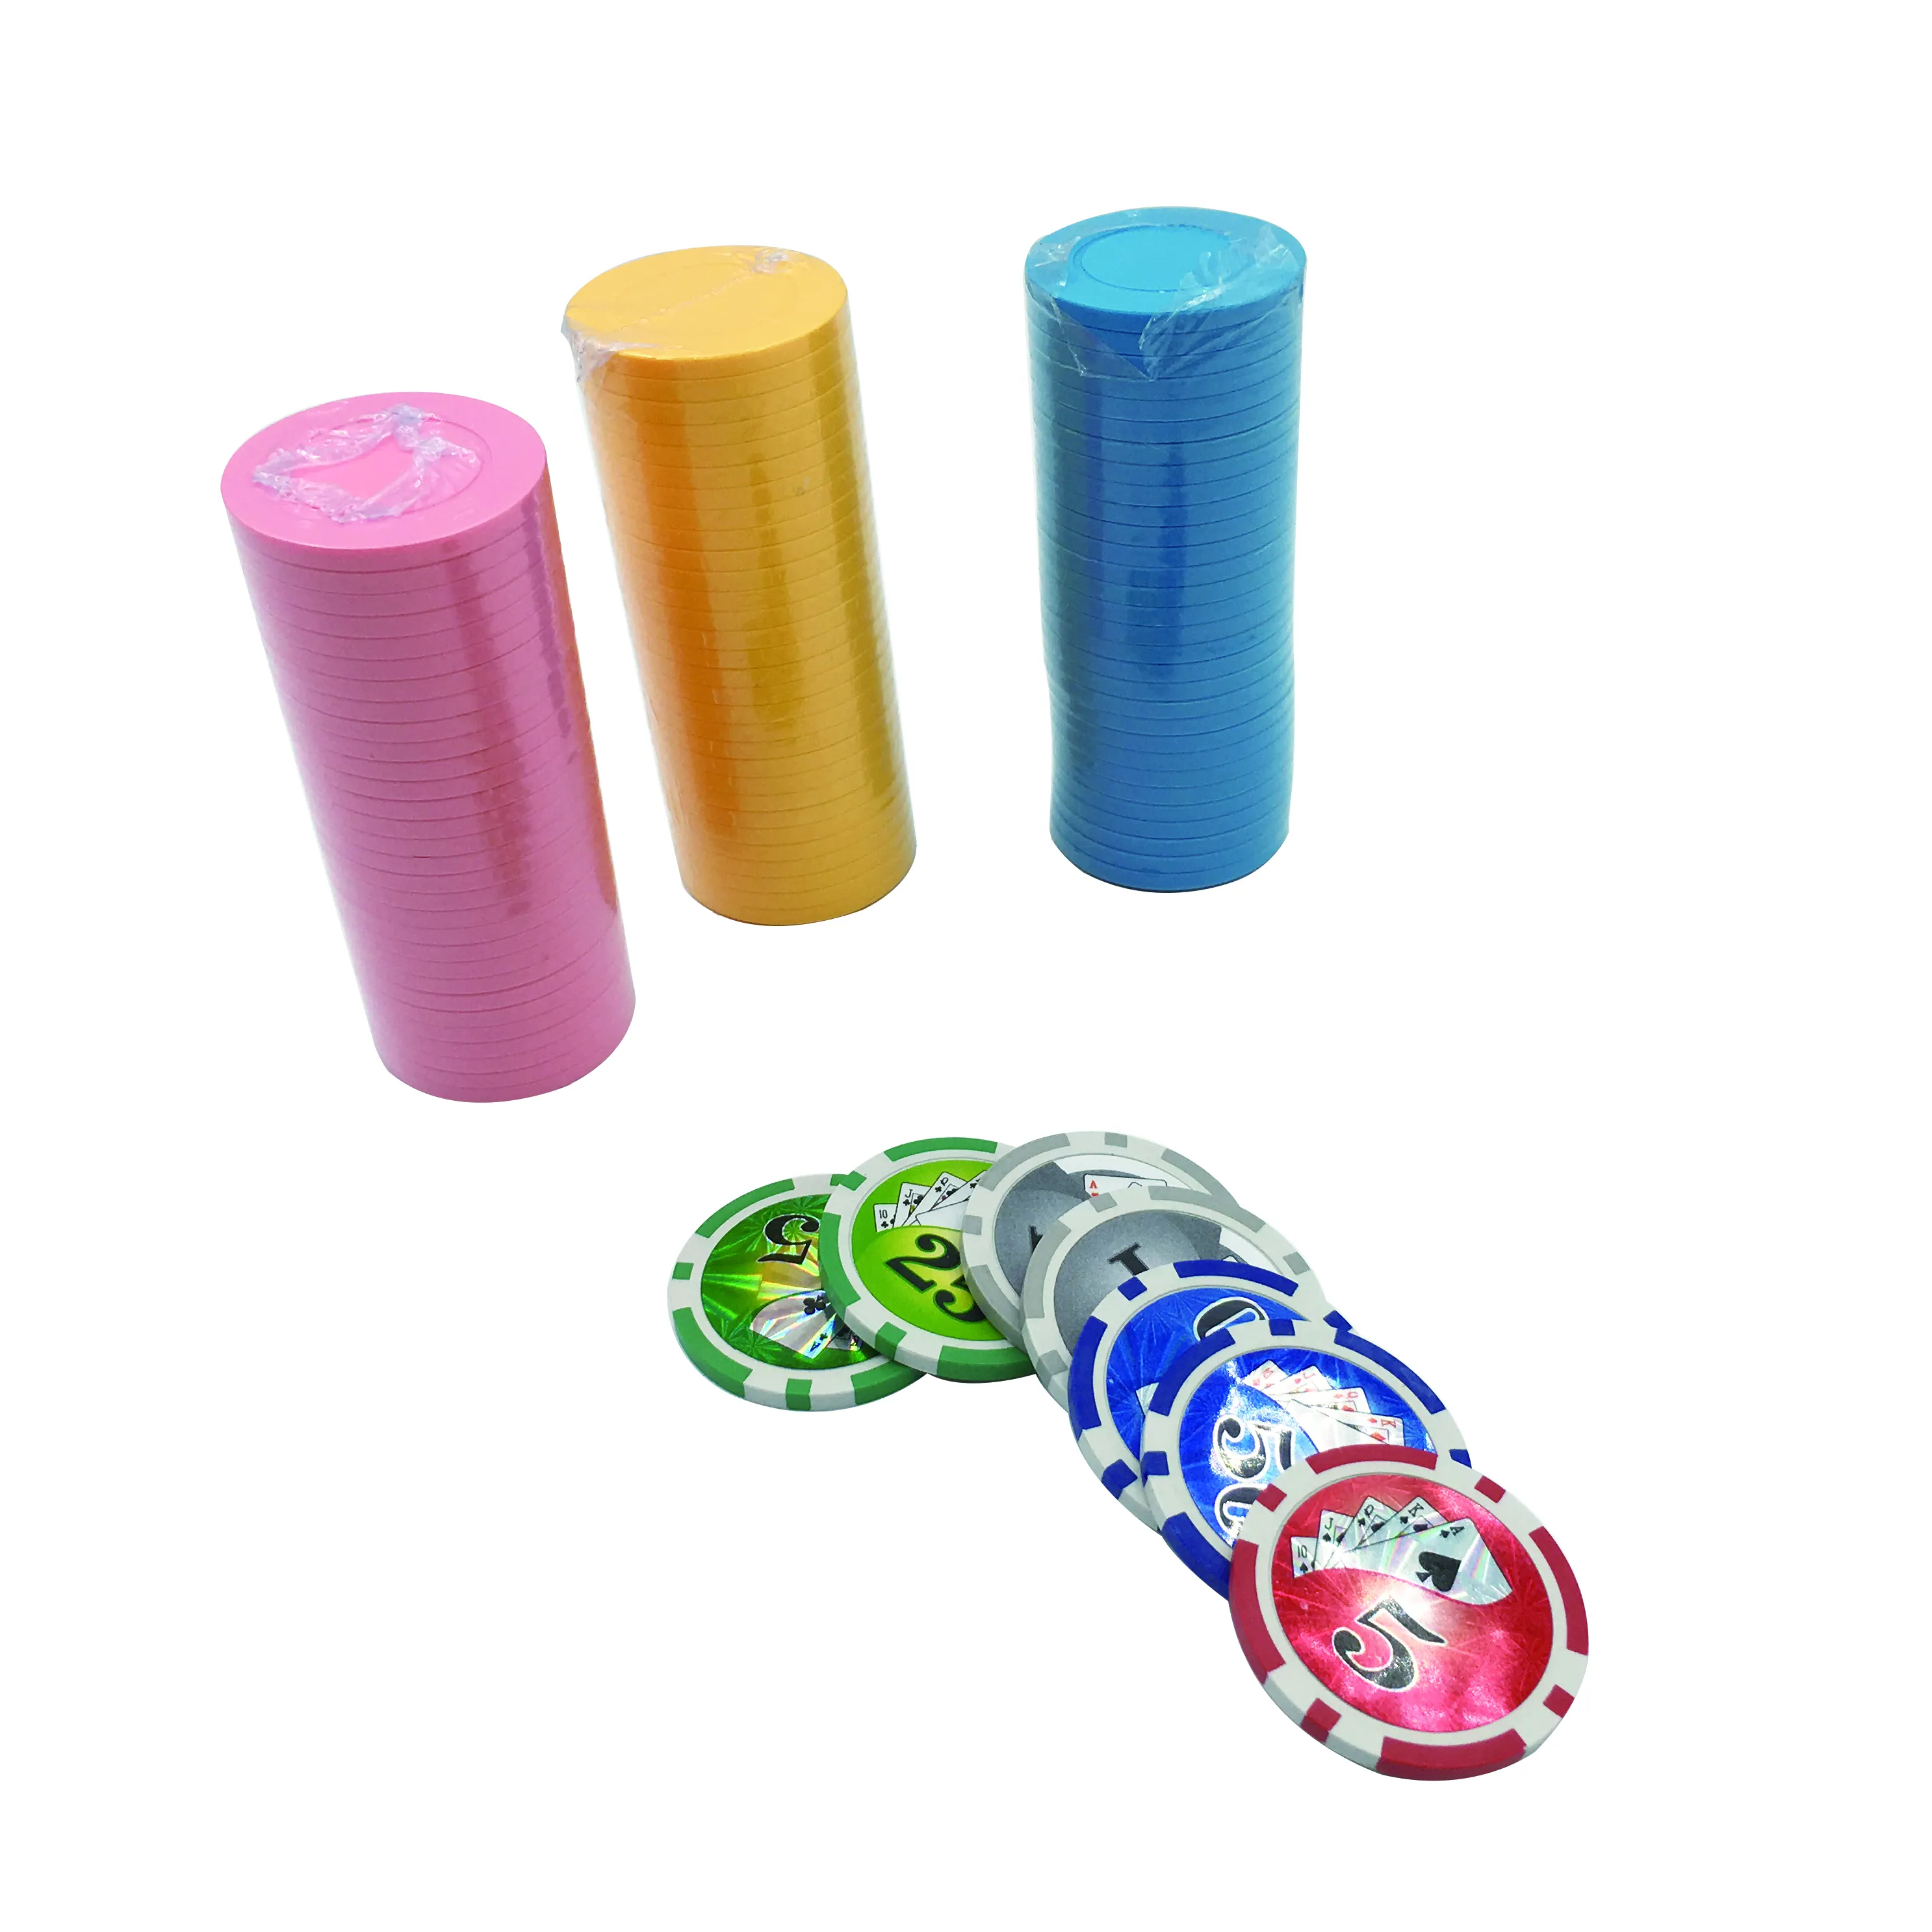 Toptan özel yüksek kaliteli kil cips ile oyun kartı casino poker metal ve plastik cips